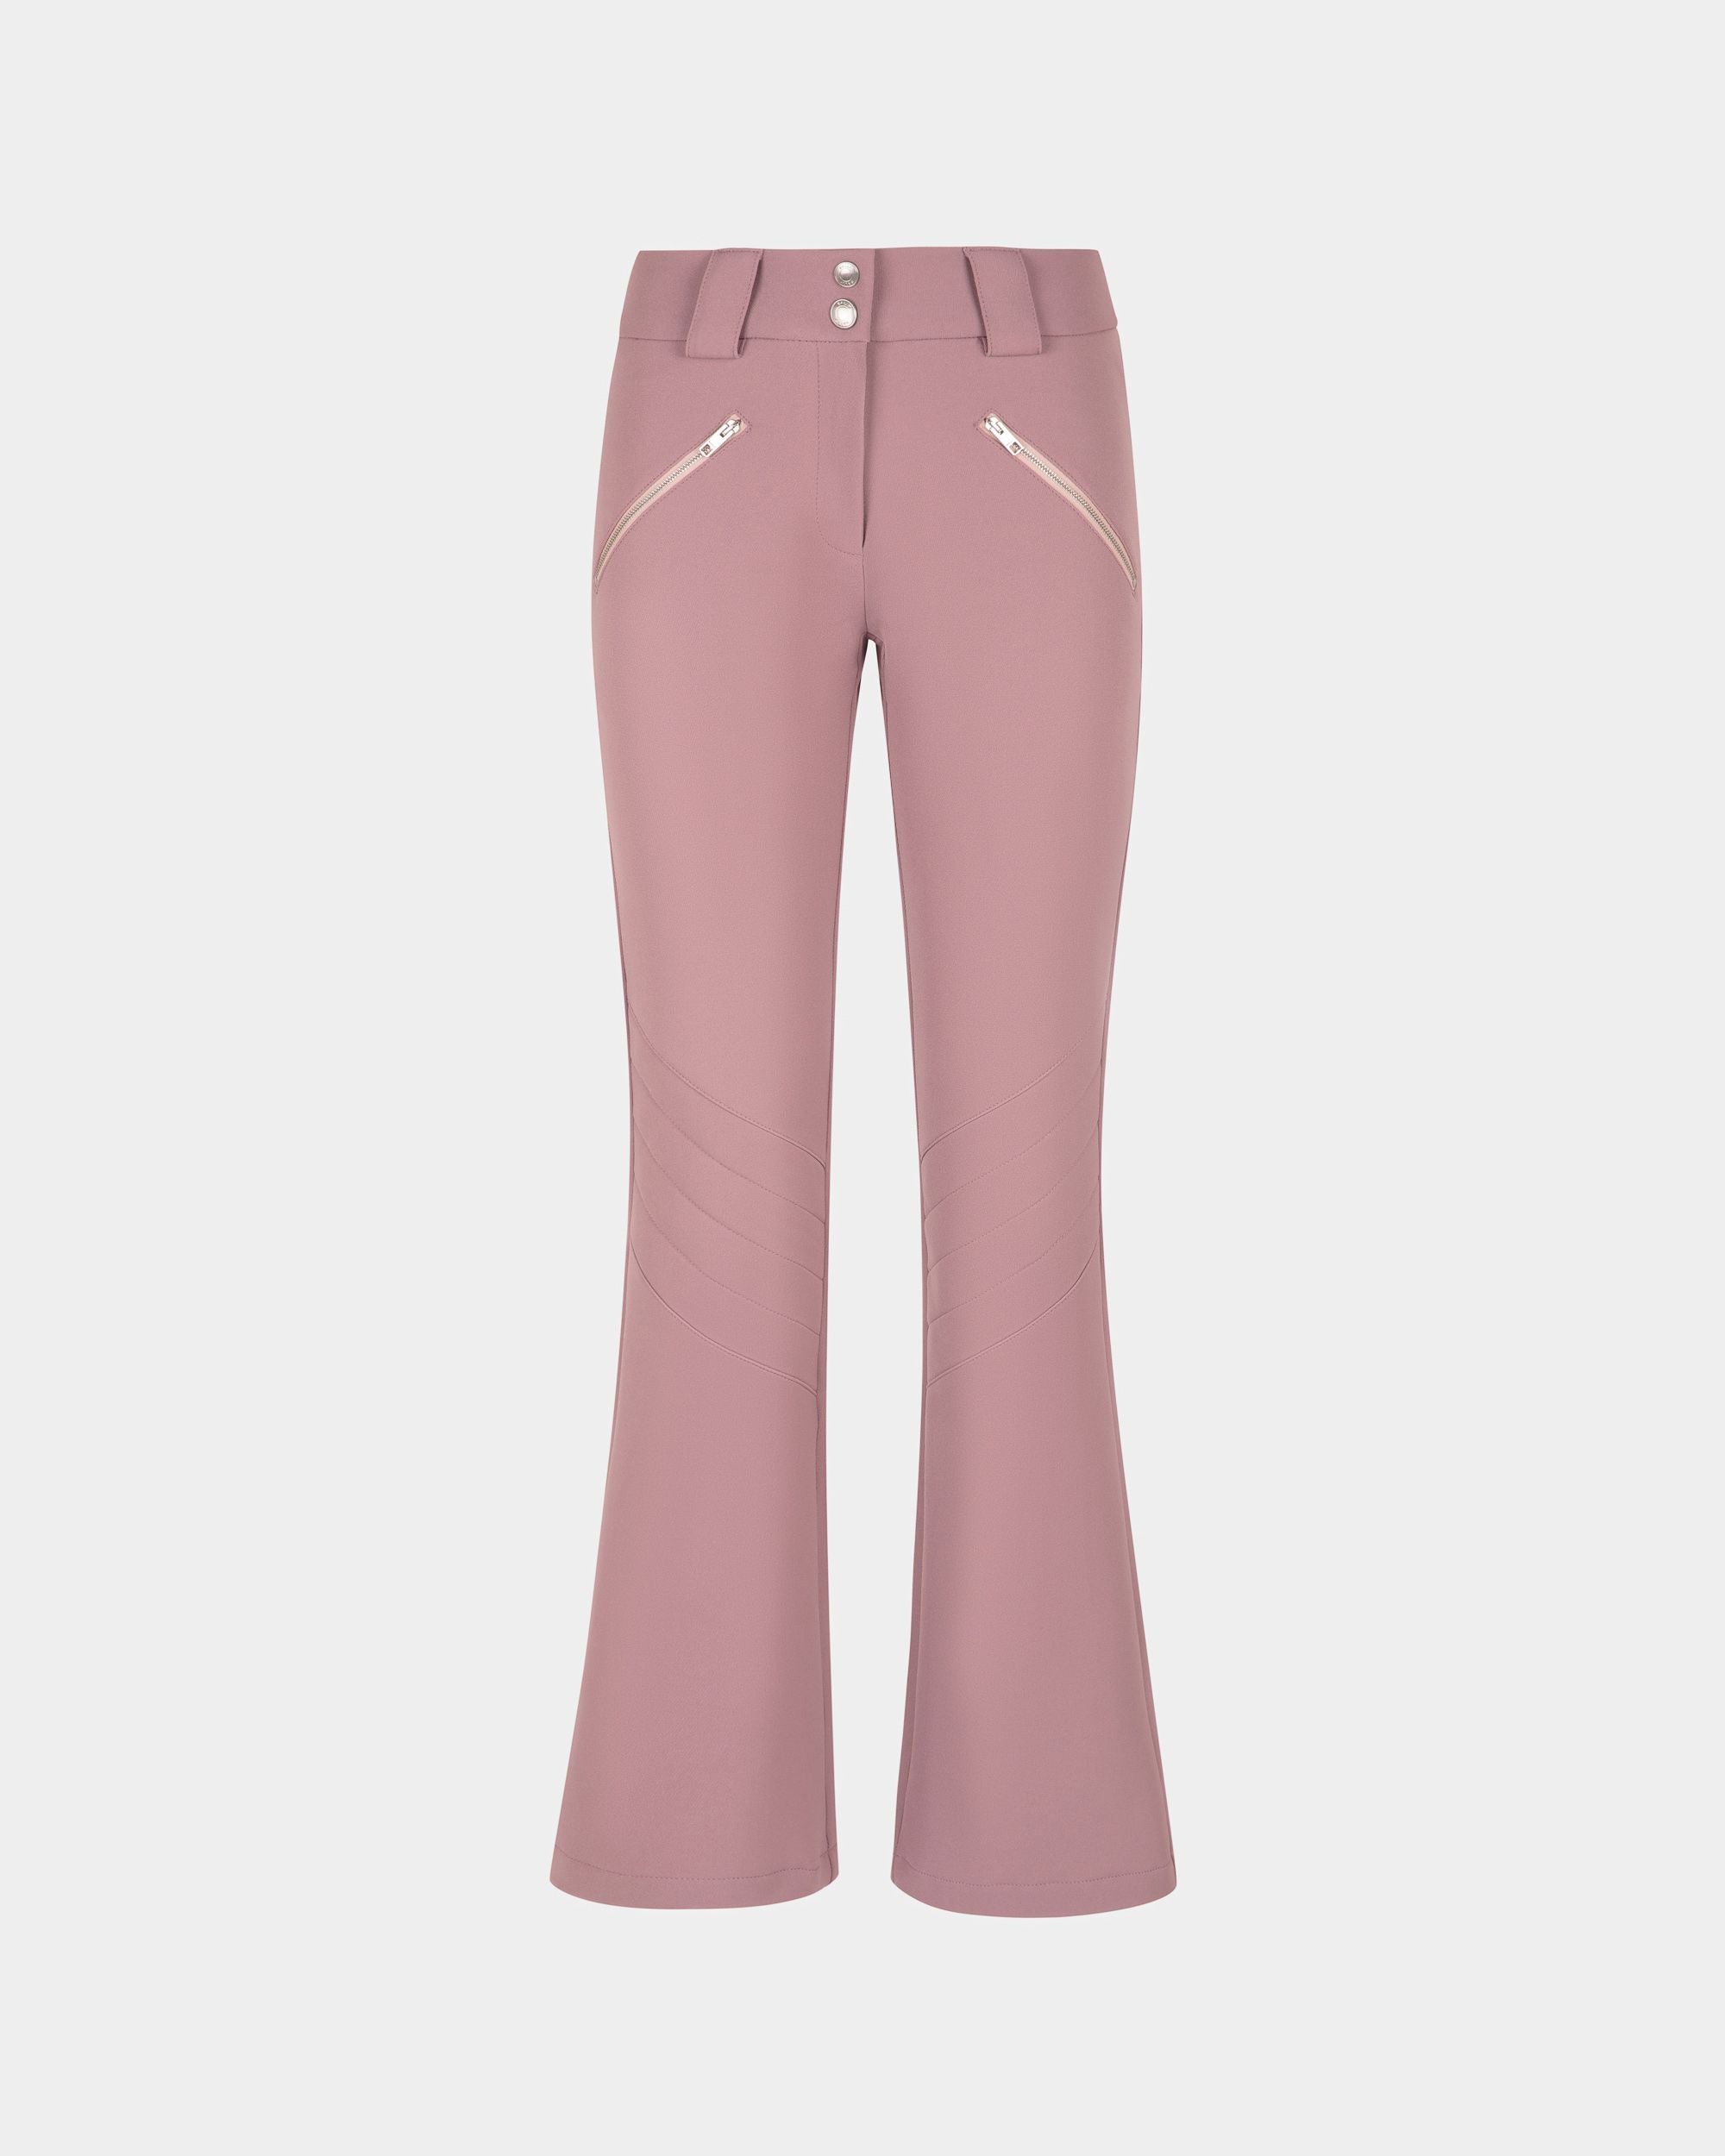 Pantalon stretch évasé pour femme couleur rose clair | Bally | Still Life Devant